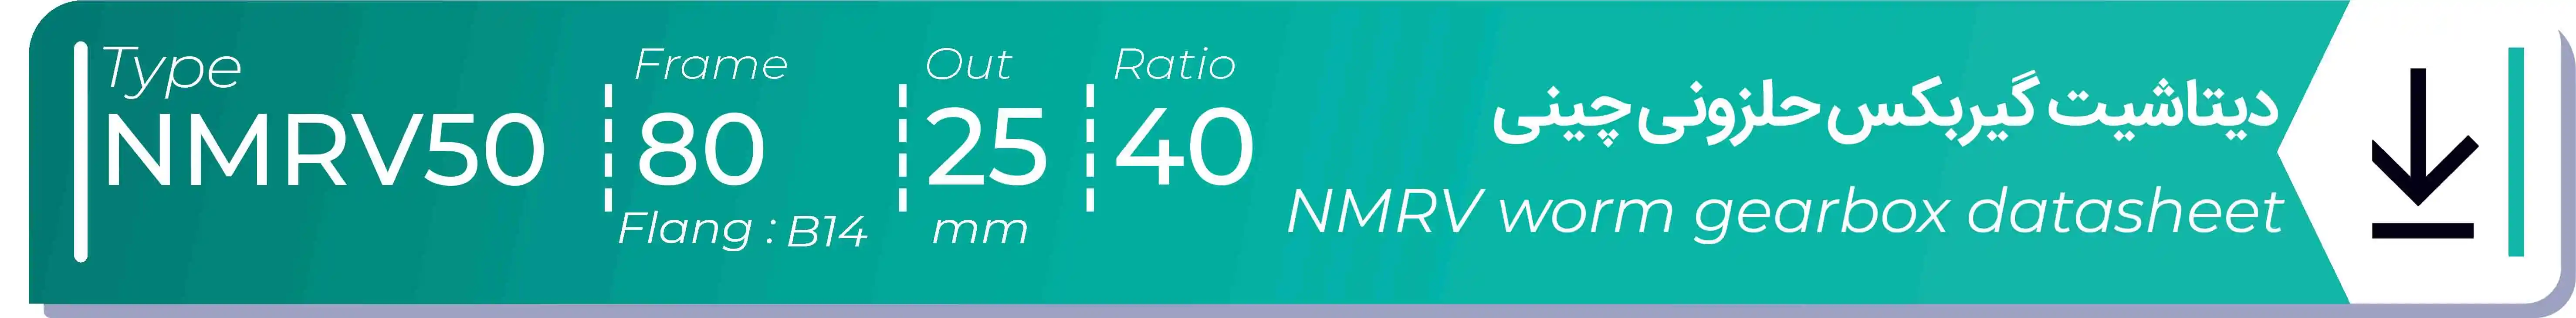  دیتاشیت و مشخصات فنی گیربکس حلزونی چینی   NMRV50  -  با خروجی 25- میلی متر و نسبت40 و فریم 80